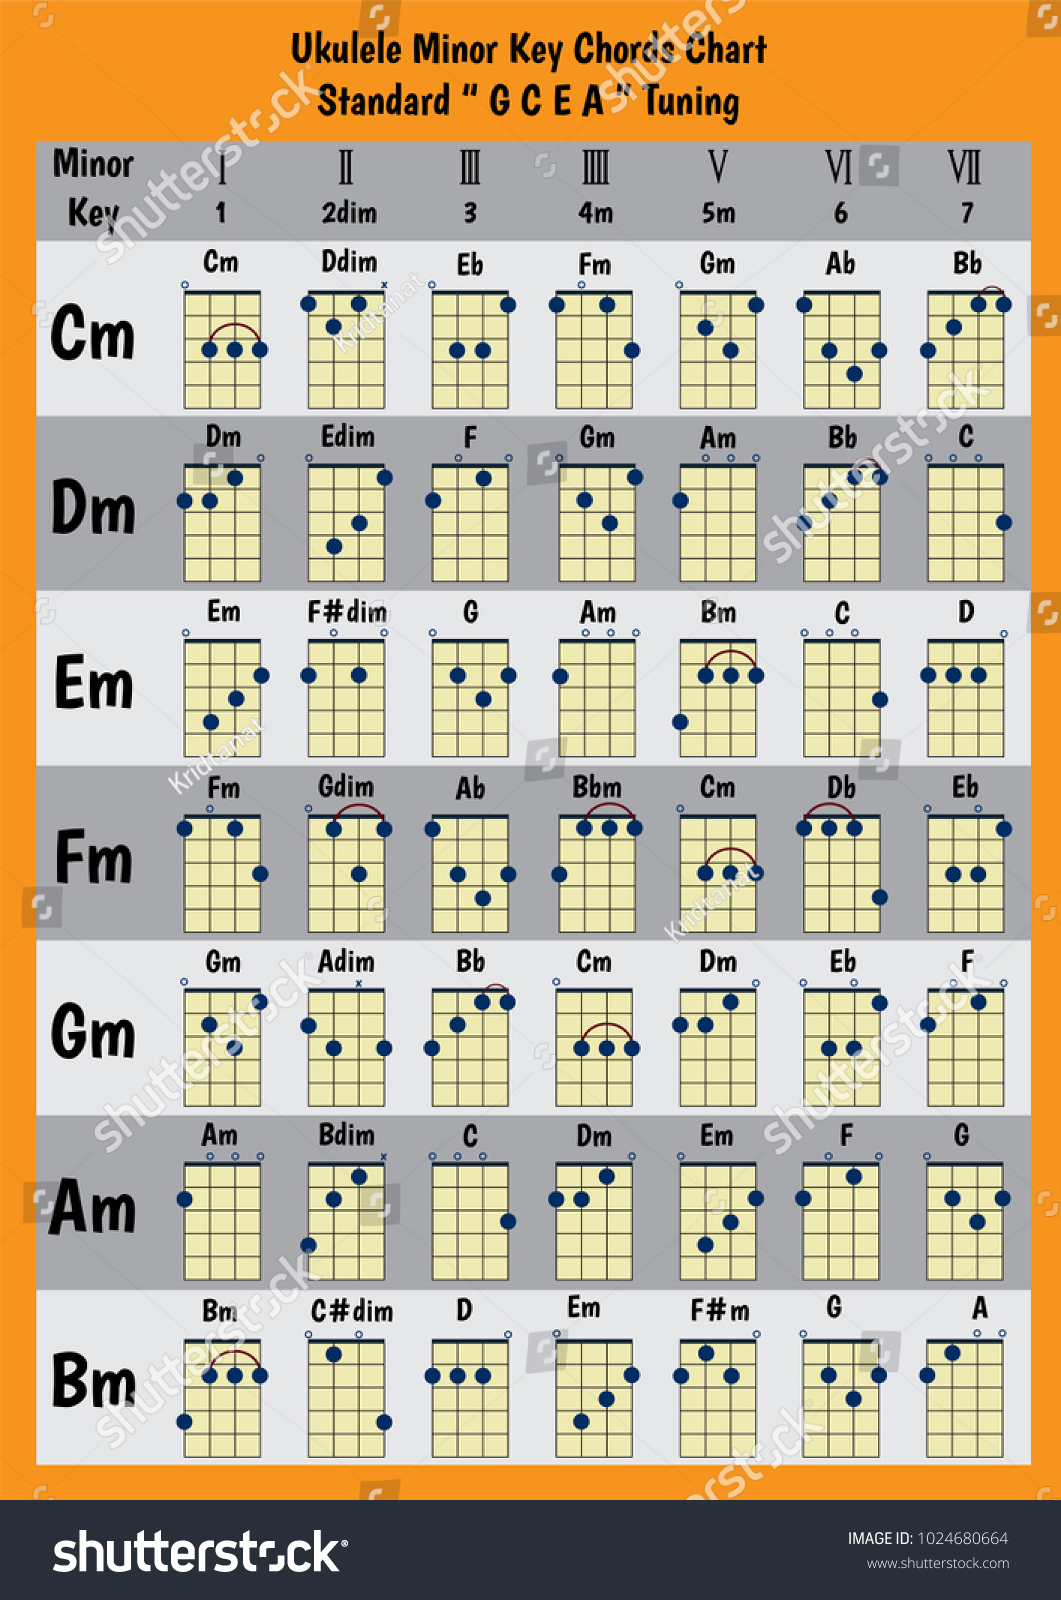 Bm Ukulele Chord Chart